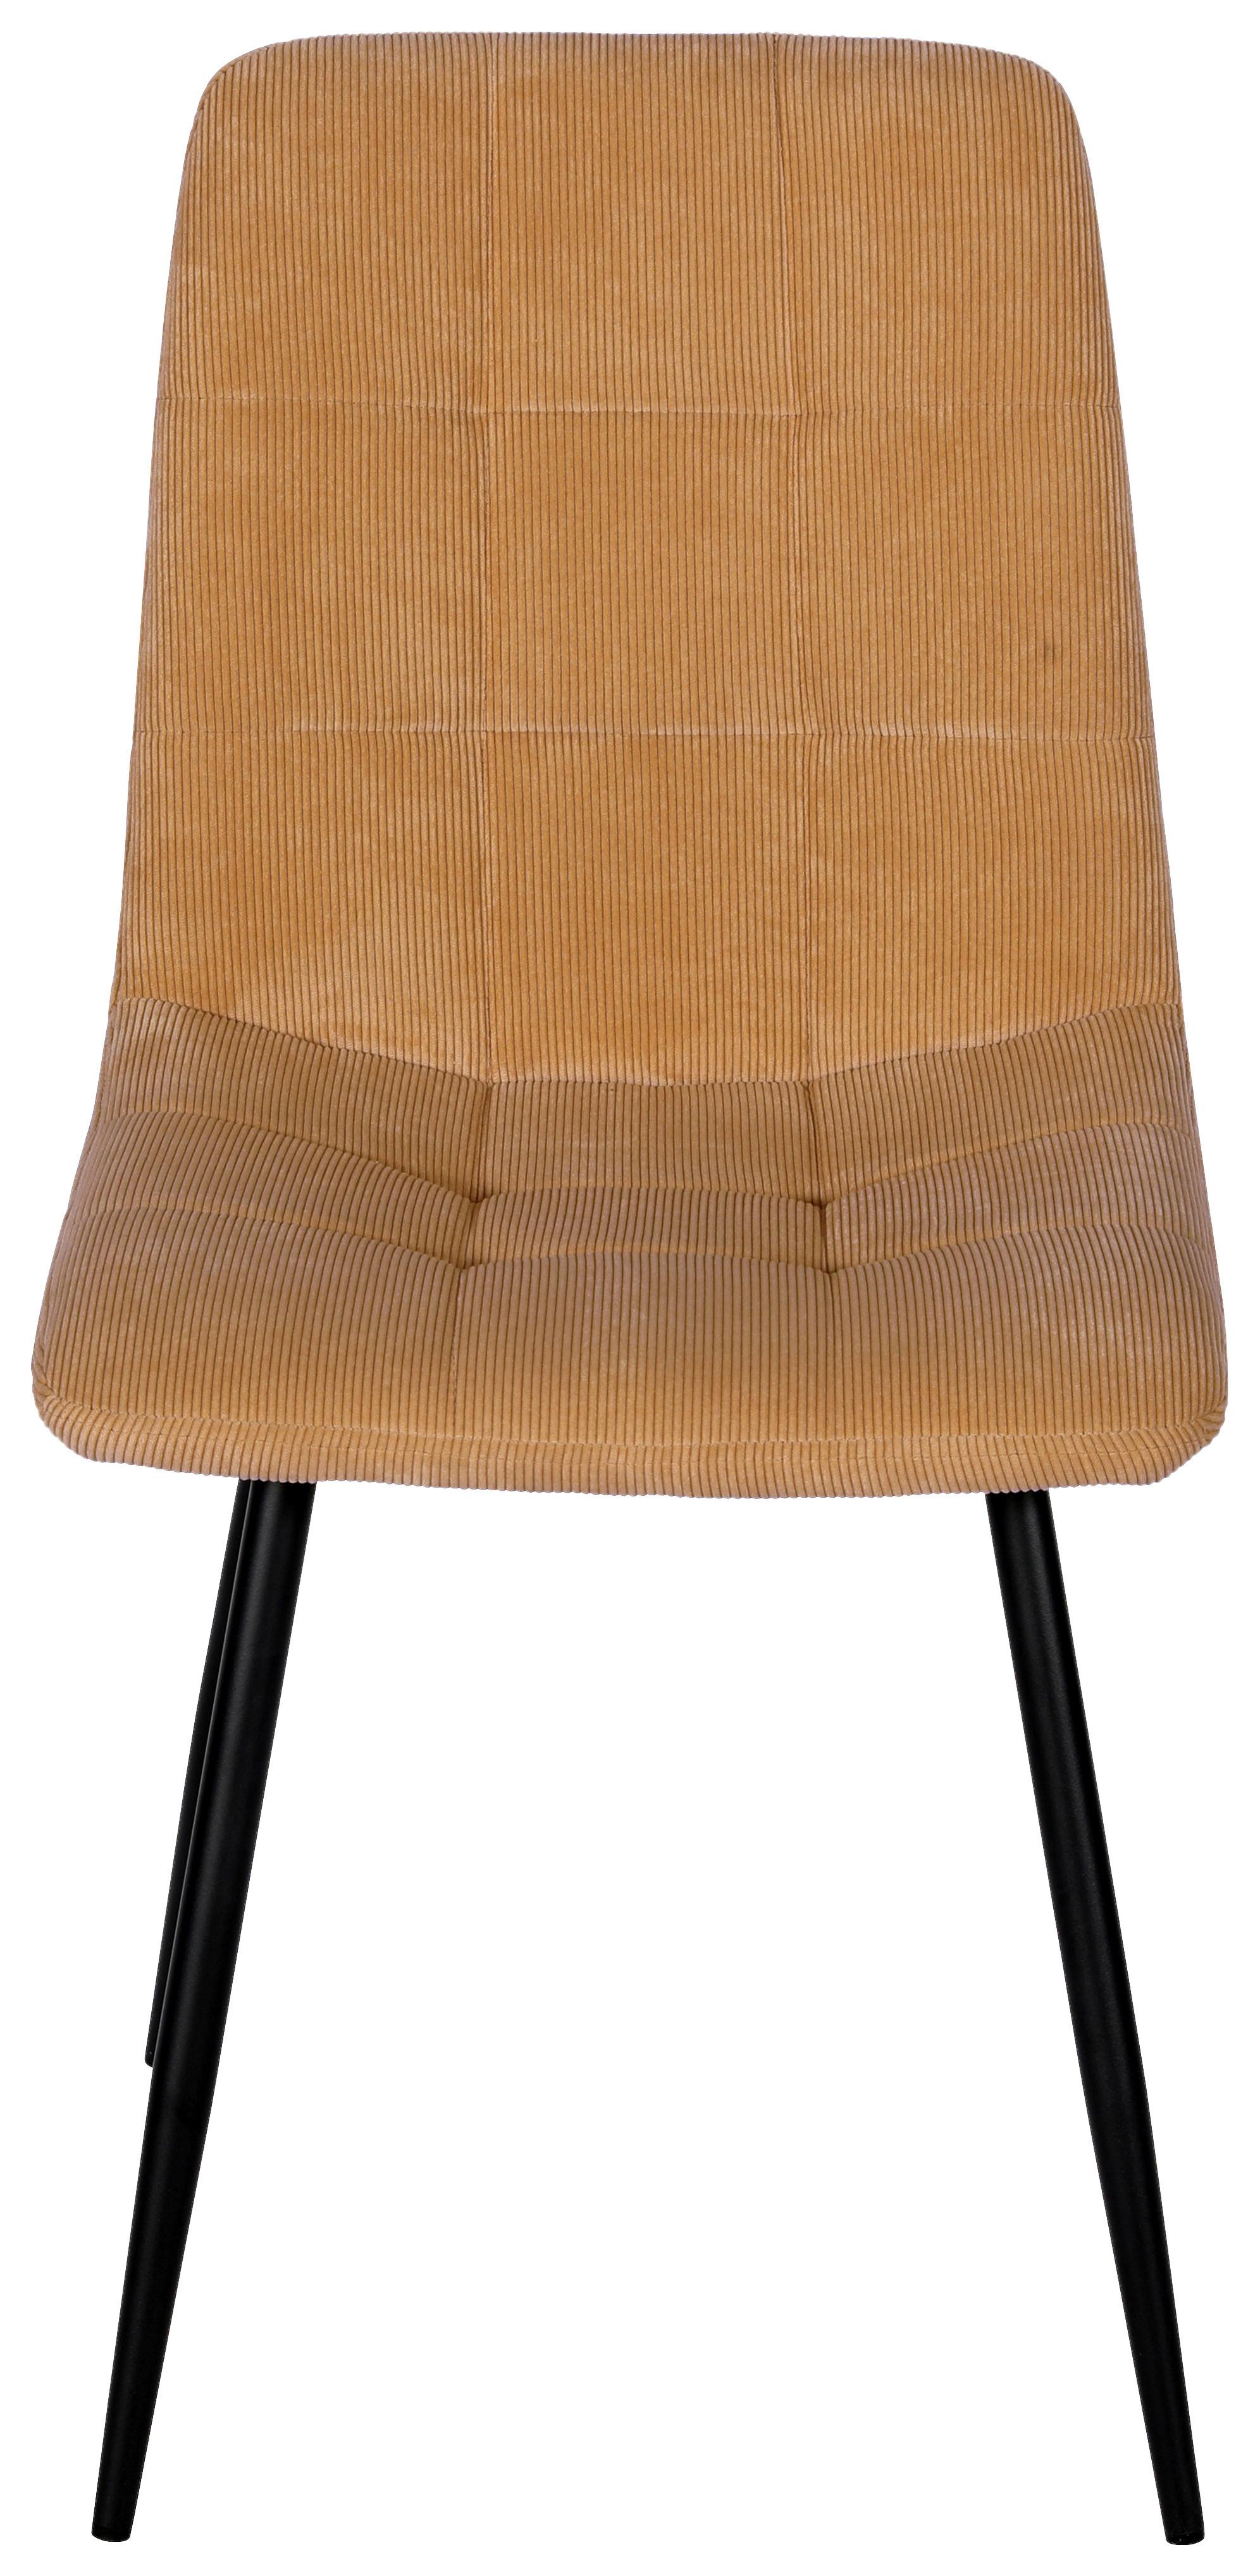 Židle Nino - černá/žlutá, Moderní, kov/dřevo (45/87/57cm) - Modern Living